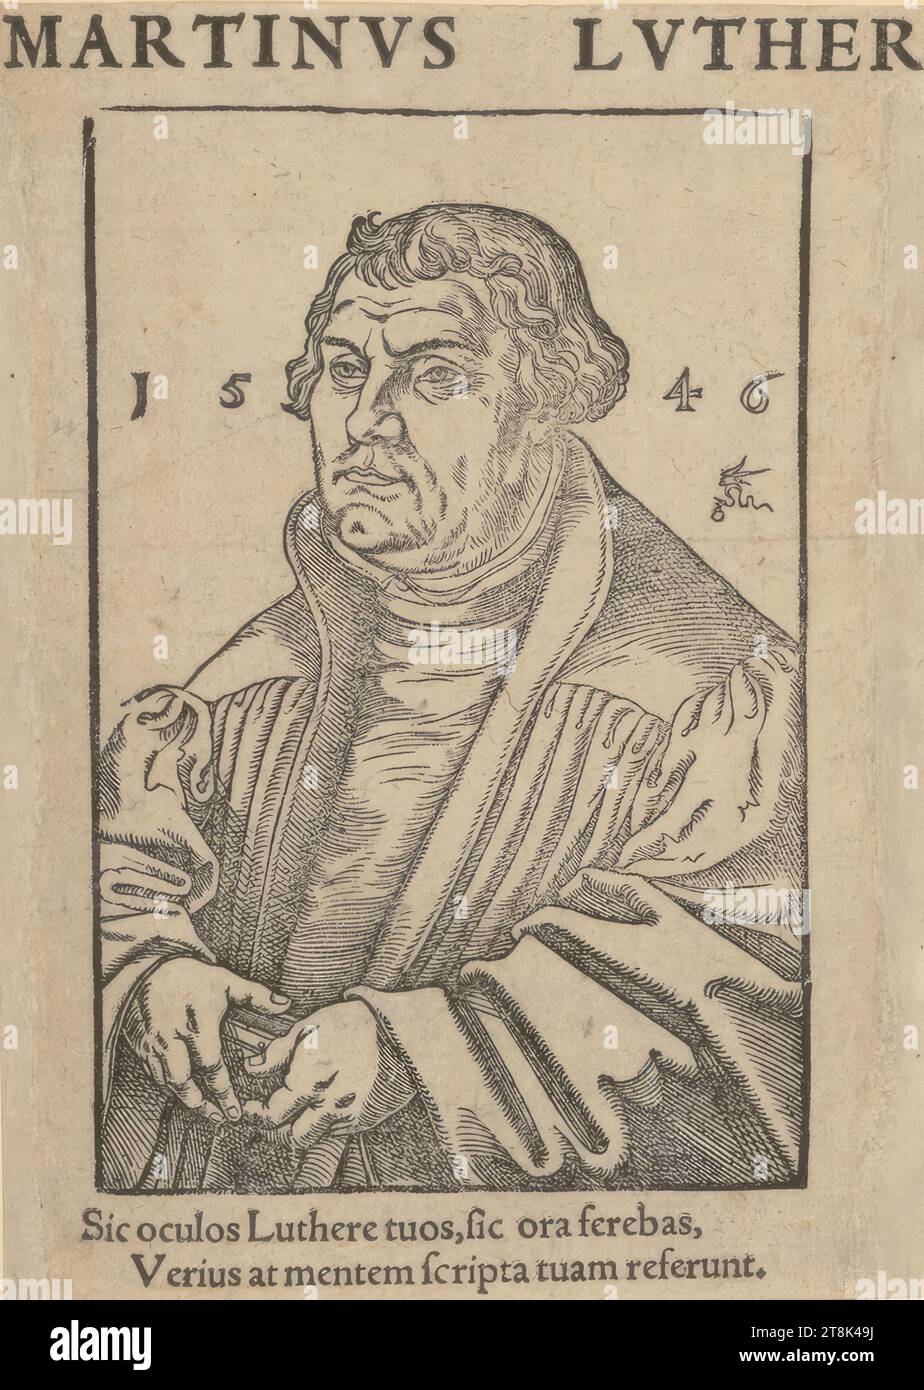 Martin Luther, Lucas Cranach the Elder J., Wittenberg 1515 - 1586 Weimar, 1546, Druck, Holzschnitt und Druckschrift, Blatt: 16,2 x 11,4 cm, oben: 'MARTINVS LVTHER'; l.o. '15'; r.o. '46'; M.u.'SIC oculos Luthere tuos, sic ora ferebas, / Verius at mentem scripta tuam Referunt Stockfoto